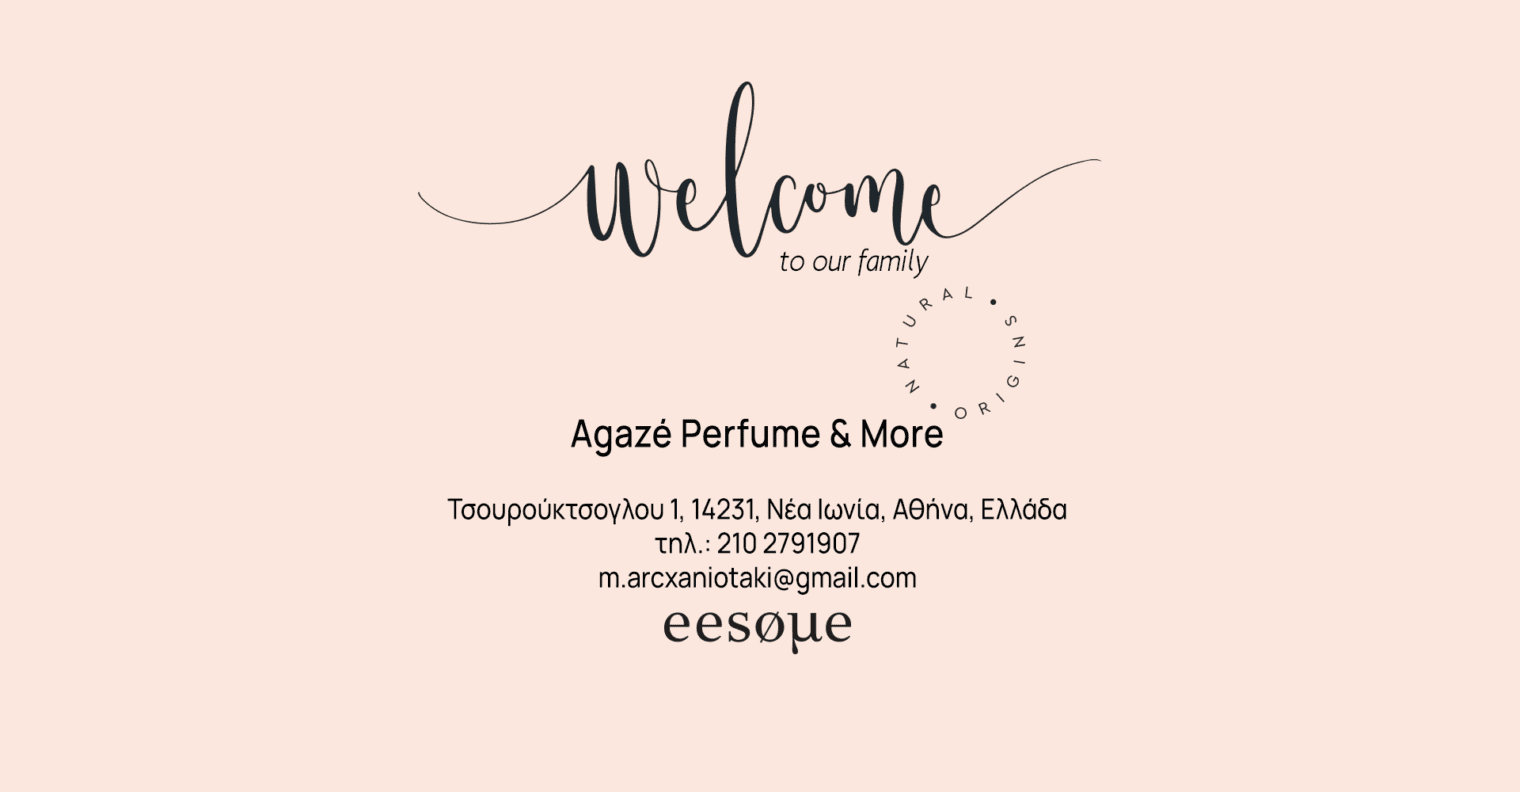 Agazé Perfume & More